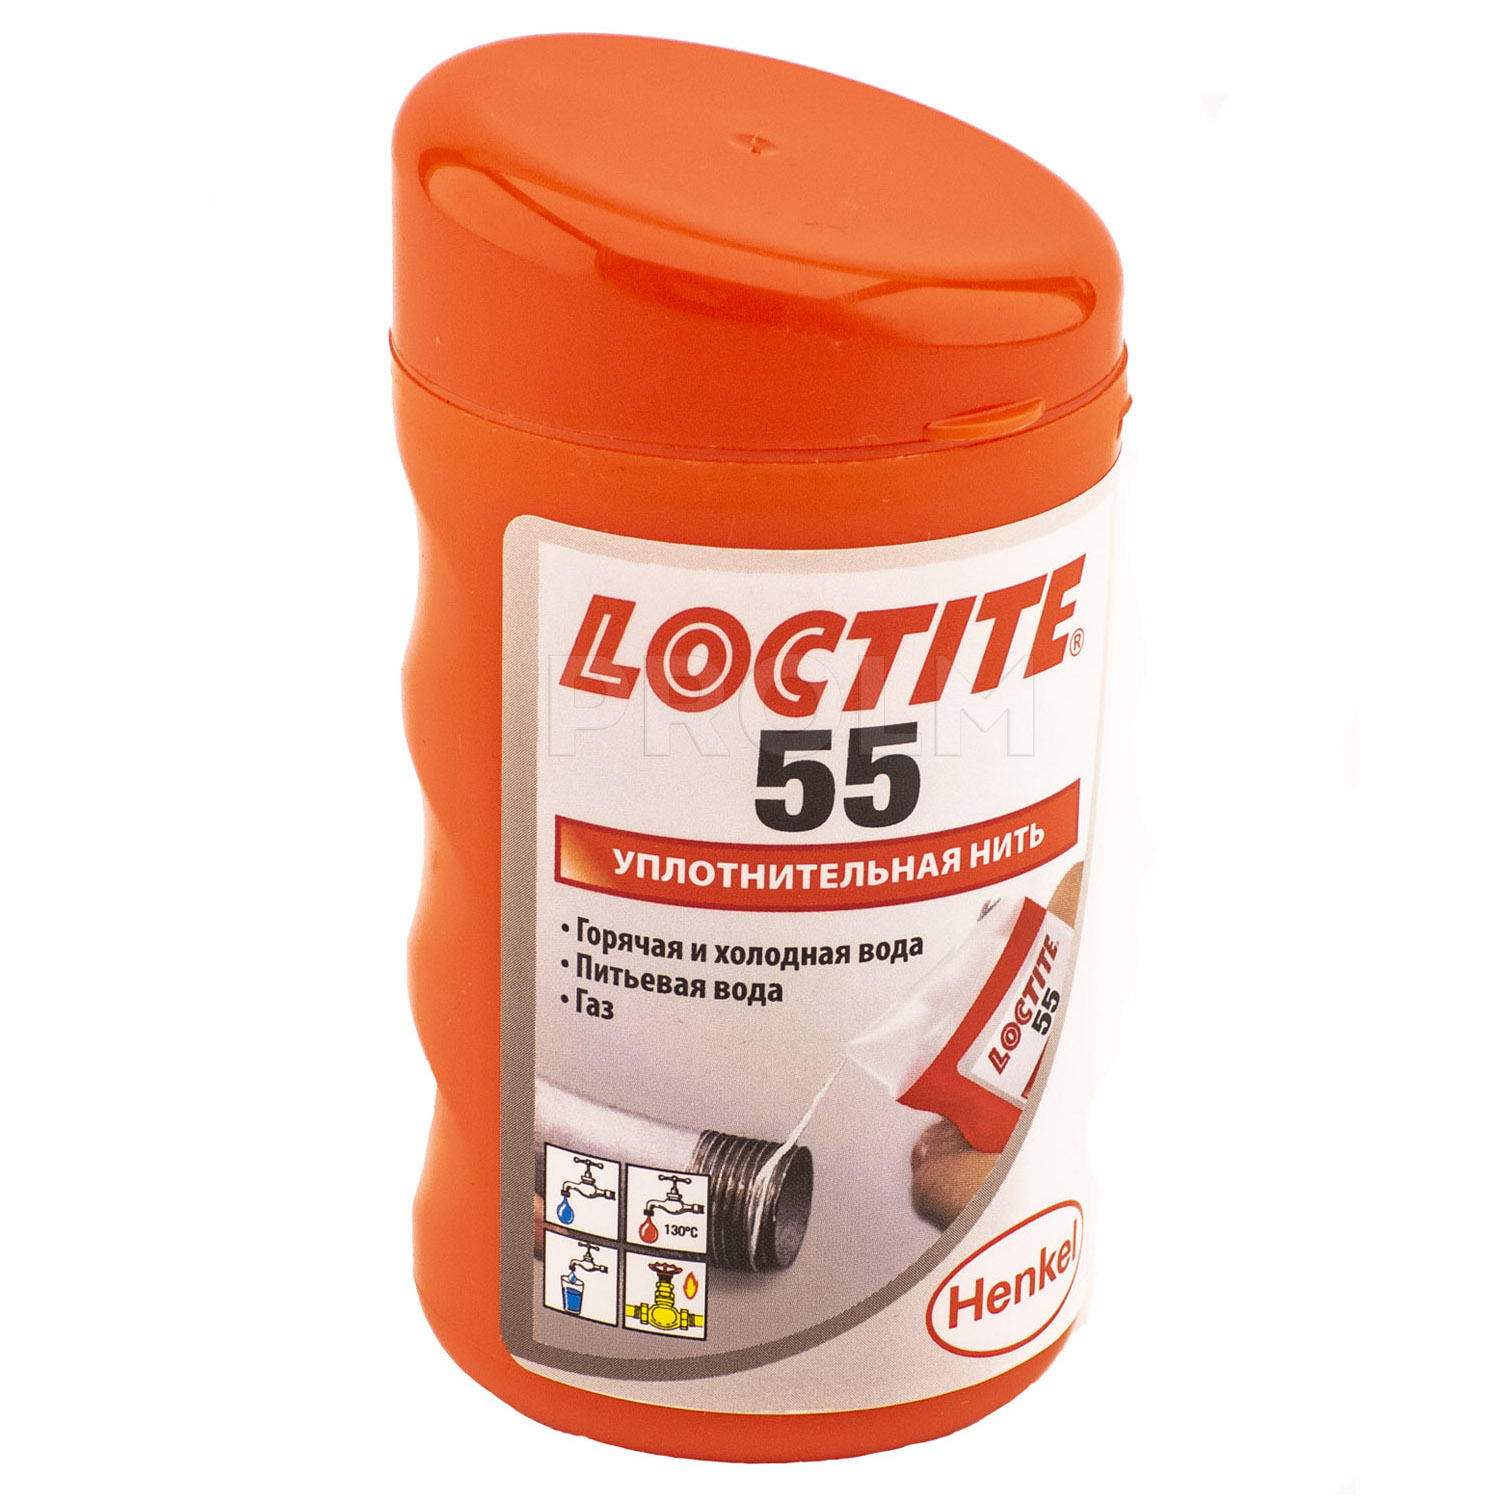 Loctite 55 герметизирующая нить  по низкой цене 